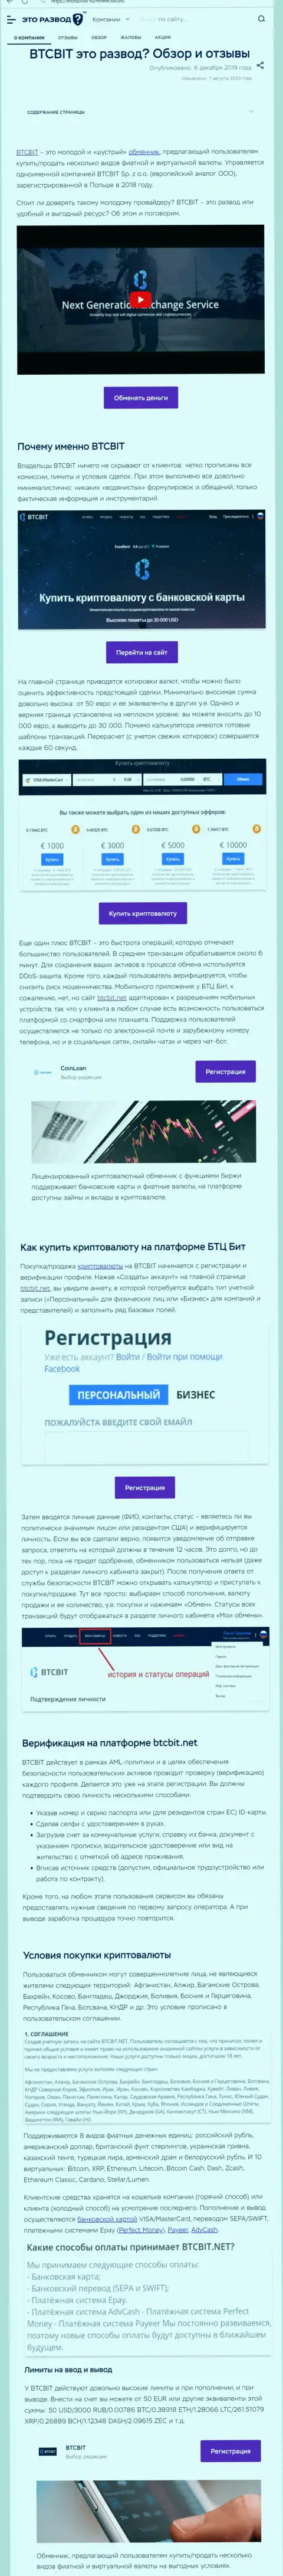 Статья с информационным обзором интернет-организации BTC Bit на сайте etorazvod ru